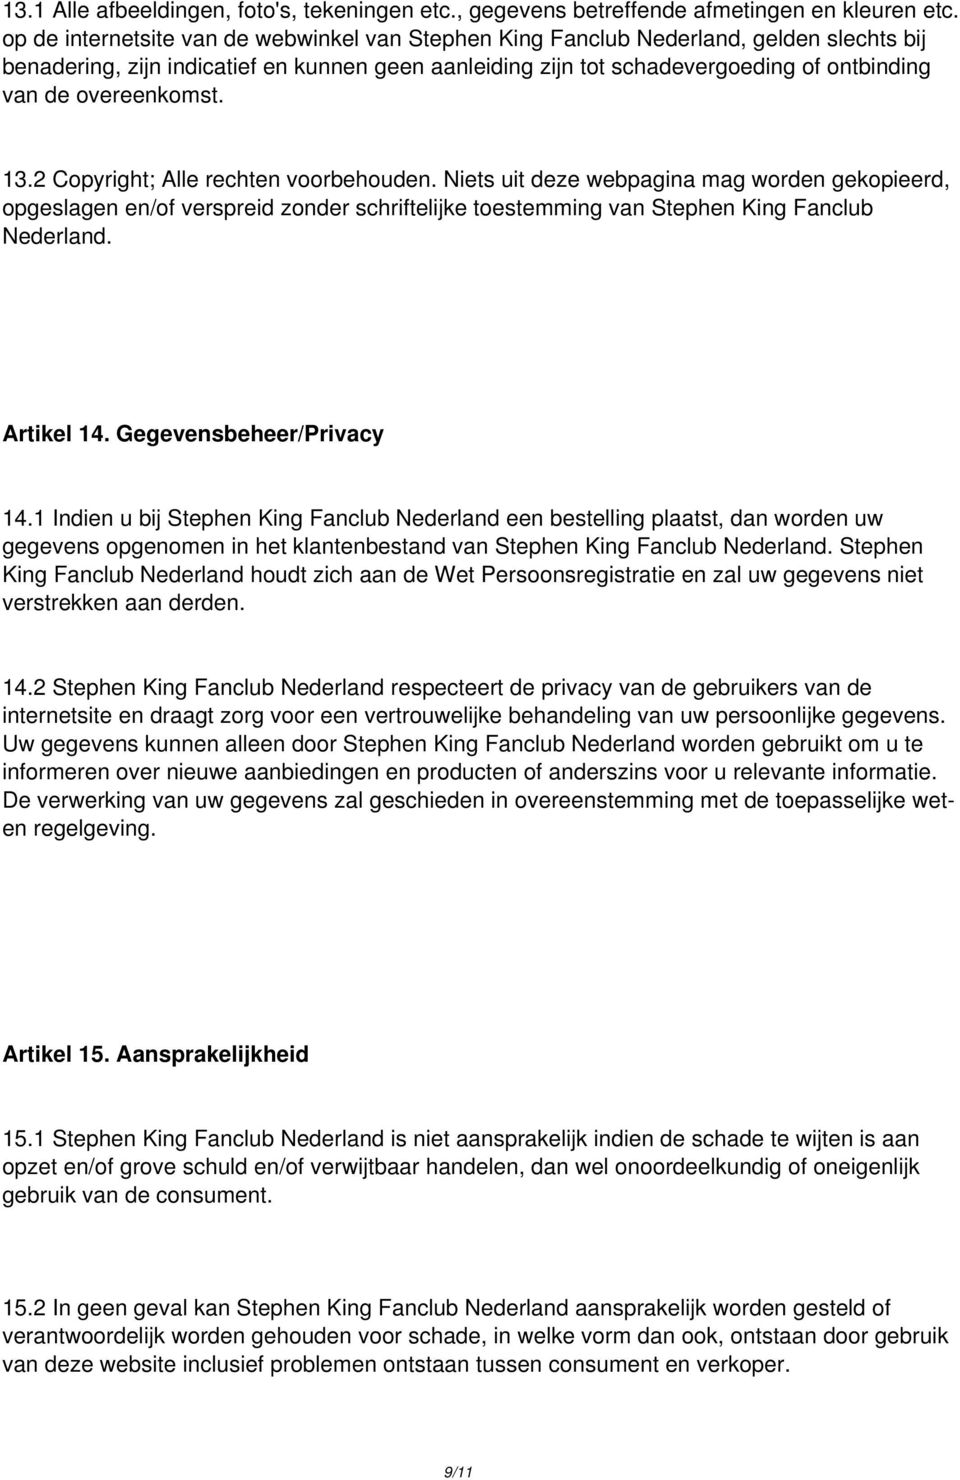 overeenkomst. 13.2 Copyright; Alle rechten voorbehouden. Niets uit deze webpagina mag worden gekopieerd, opgeslagen en/of verspreid zonder schriftelijke toestemming van Stephen King Fanclub Nederland.